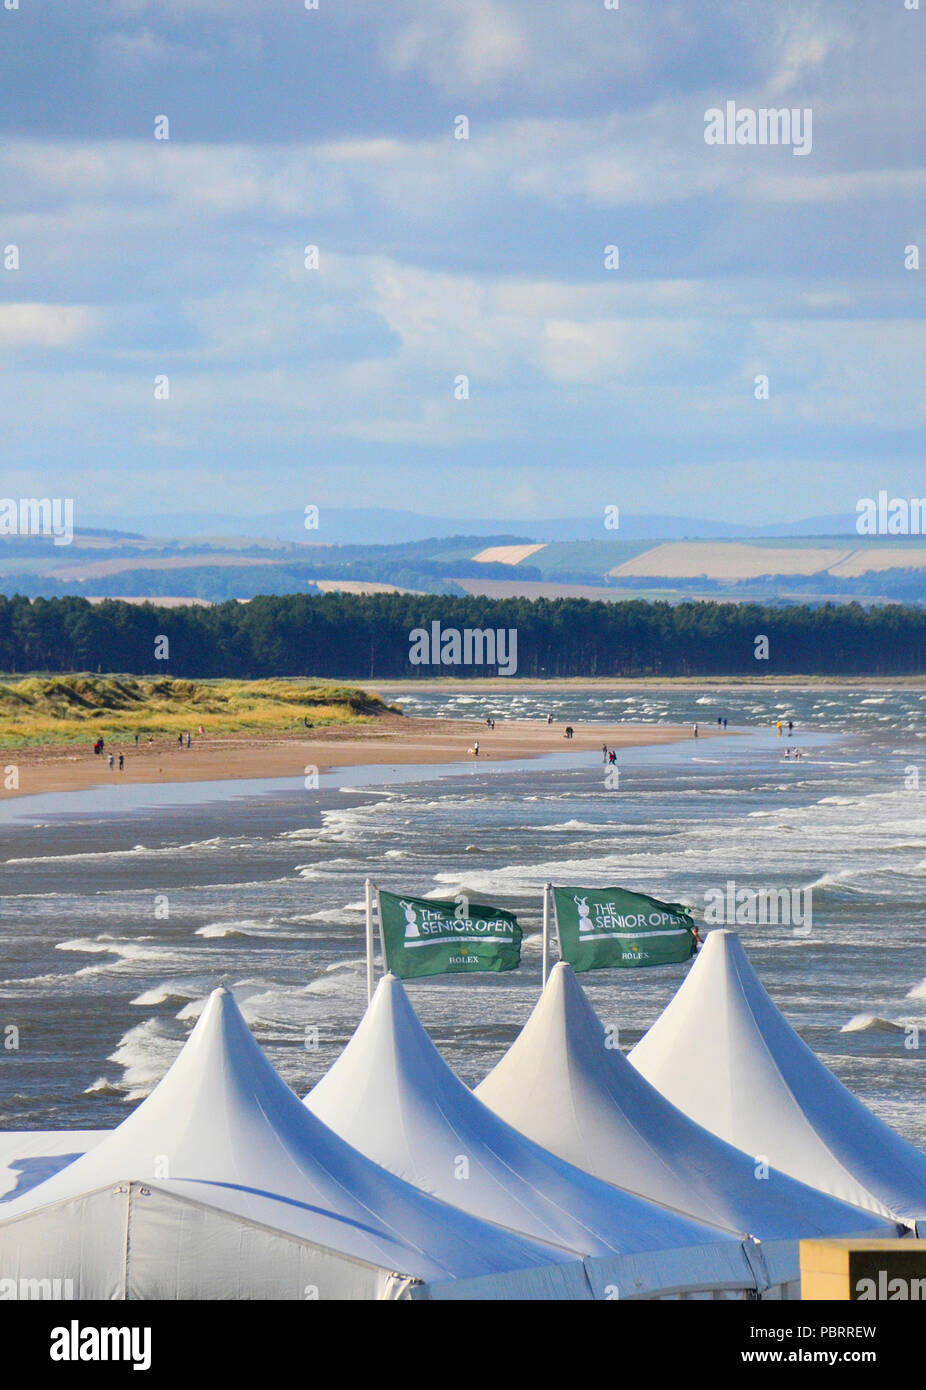 Haut de tentes chapiteau,mis en place pour les hauts responsable open 2018,avec la plage de West sands - St Andrews Fife en arrière-plan. Banque D'Images